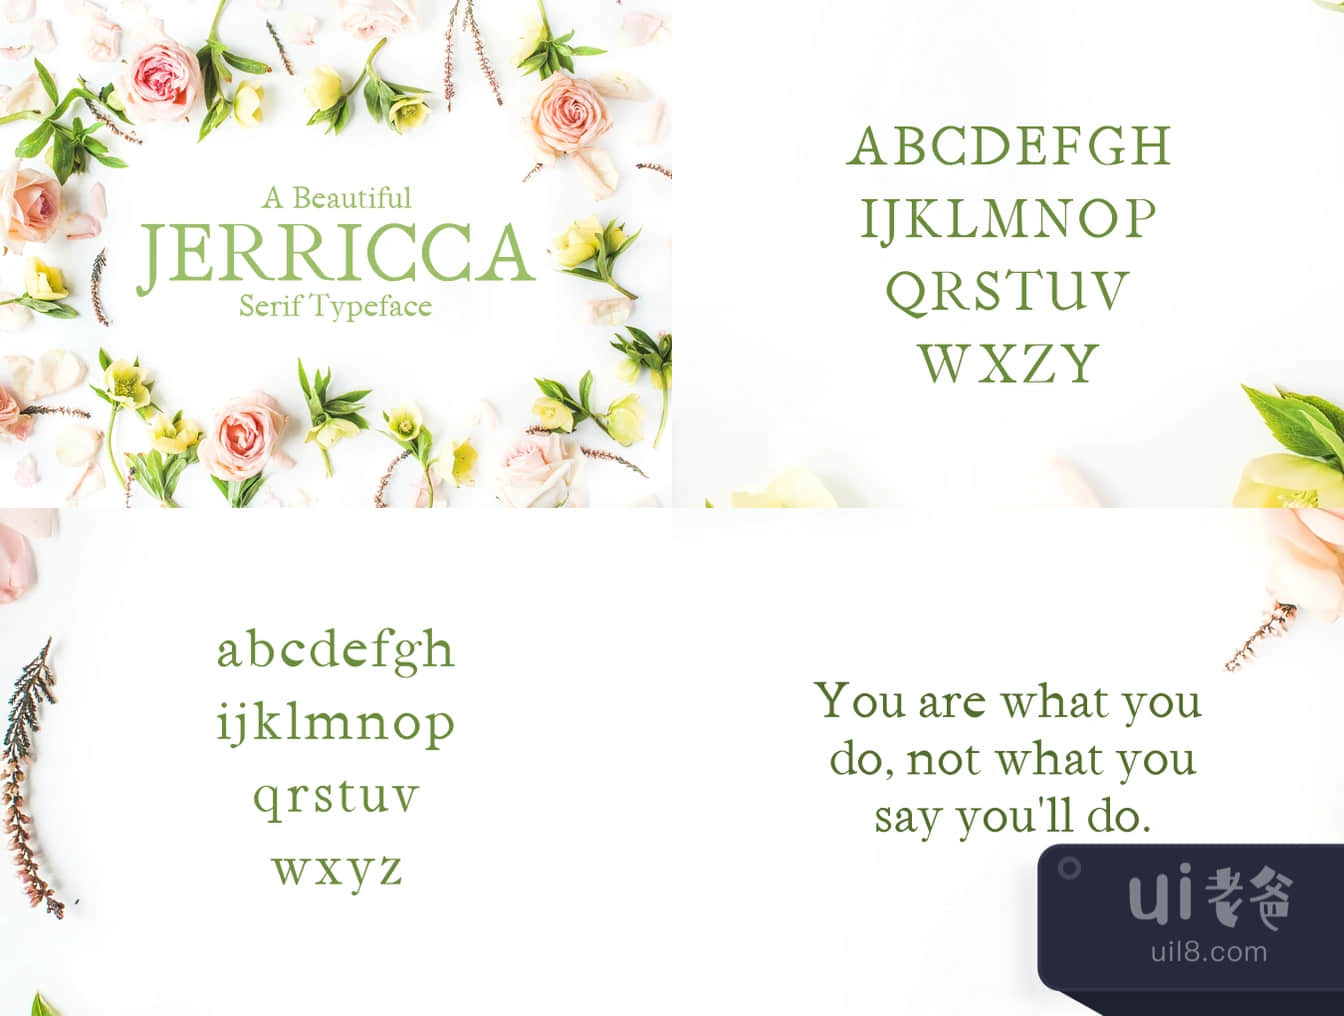 Jerricca Serif Typeface (Jerricca Serif Typeface)插图